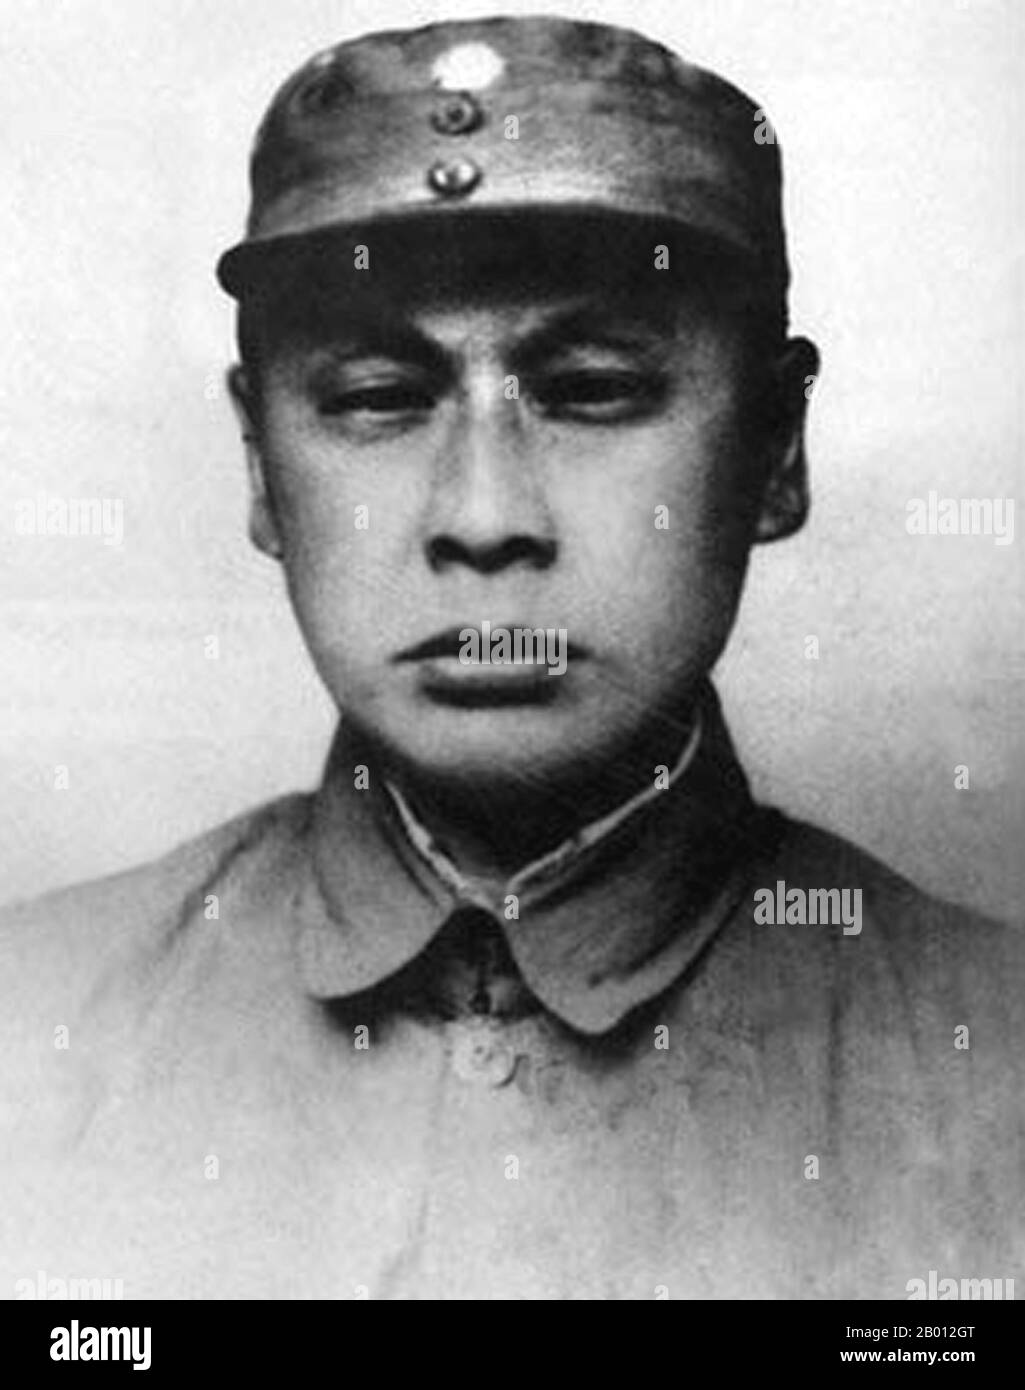 China: Chen Yi (26. August 1901 - 6. Januar 1972), chinesischer kommunistischer Militärkommandant und Politiker. Chen wurde in Lezhi, in der Nähe von Chengdu, Sichuan, geboren und ging in die Familie eines mäßig wohlhabenden Richters über. Chen, ein Genosse von Lin Biao aus ihrer Guerilla-Zeit, war Kommandant der Neuen Vierten Armee während des Chinesisch-Japanischen Krieges (1937-1945) und leitete die Gegenoffensive von Shandong während des chinesischen Bürgerkrieges, Und später befehligte er die kommunistischen Armeen, die die KMT-Truppen in Huai-Hai besiegten und die untere Region Jangtze in den Jahren 1948-49 eroberten. Er wurde zum Marschall der Volksbefreiungsarmee (PLA) gemacht. Stockfoto